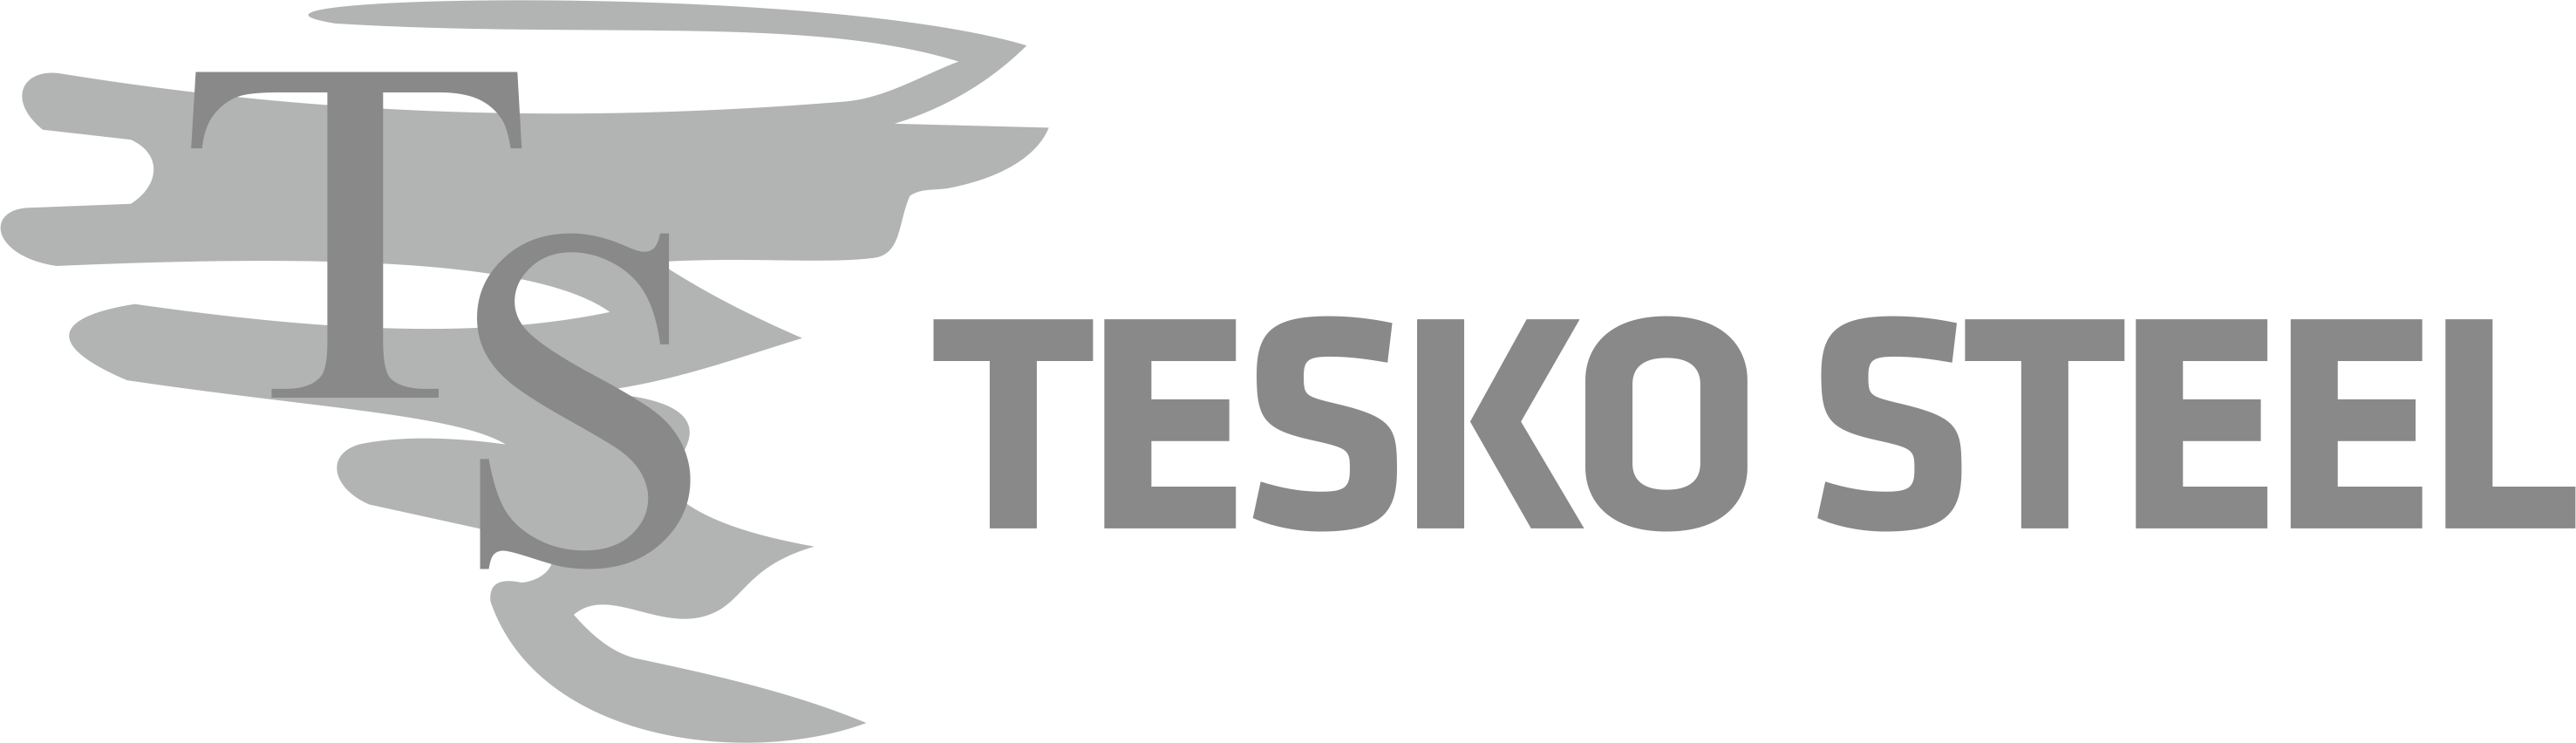 Tesko Steel